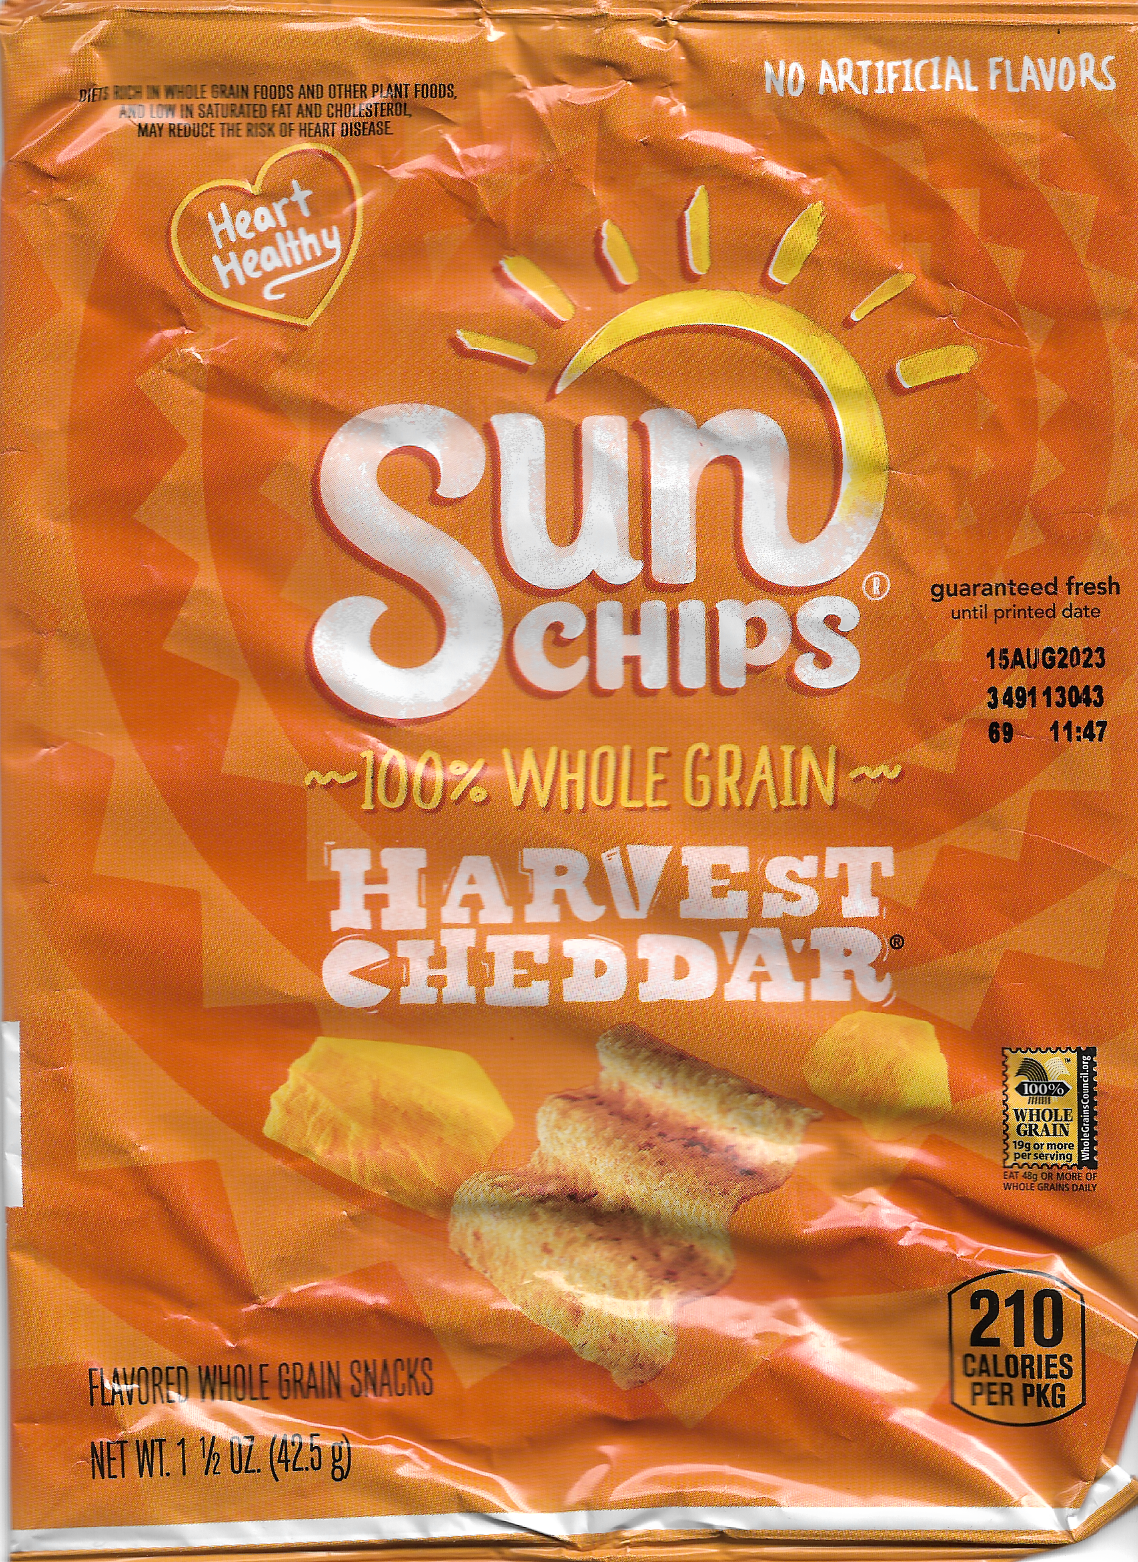 Harvest Cheddar Flavor Sun Chips